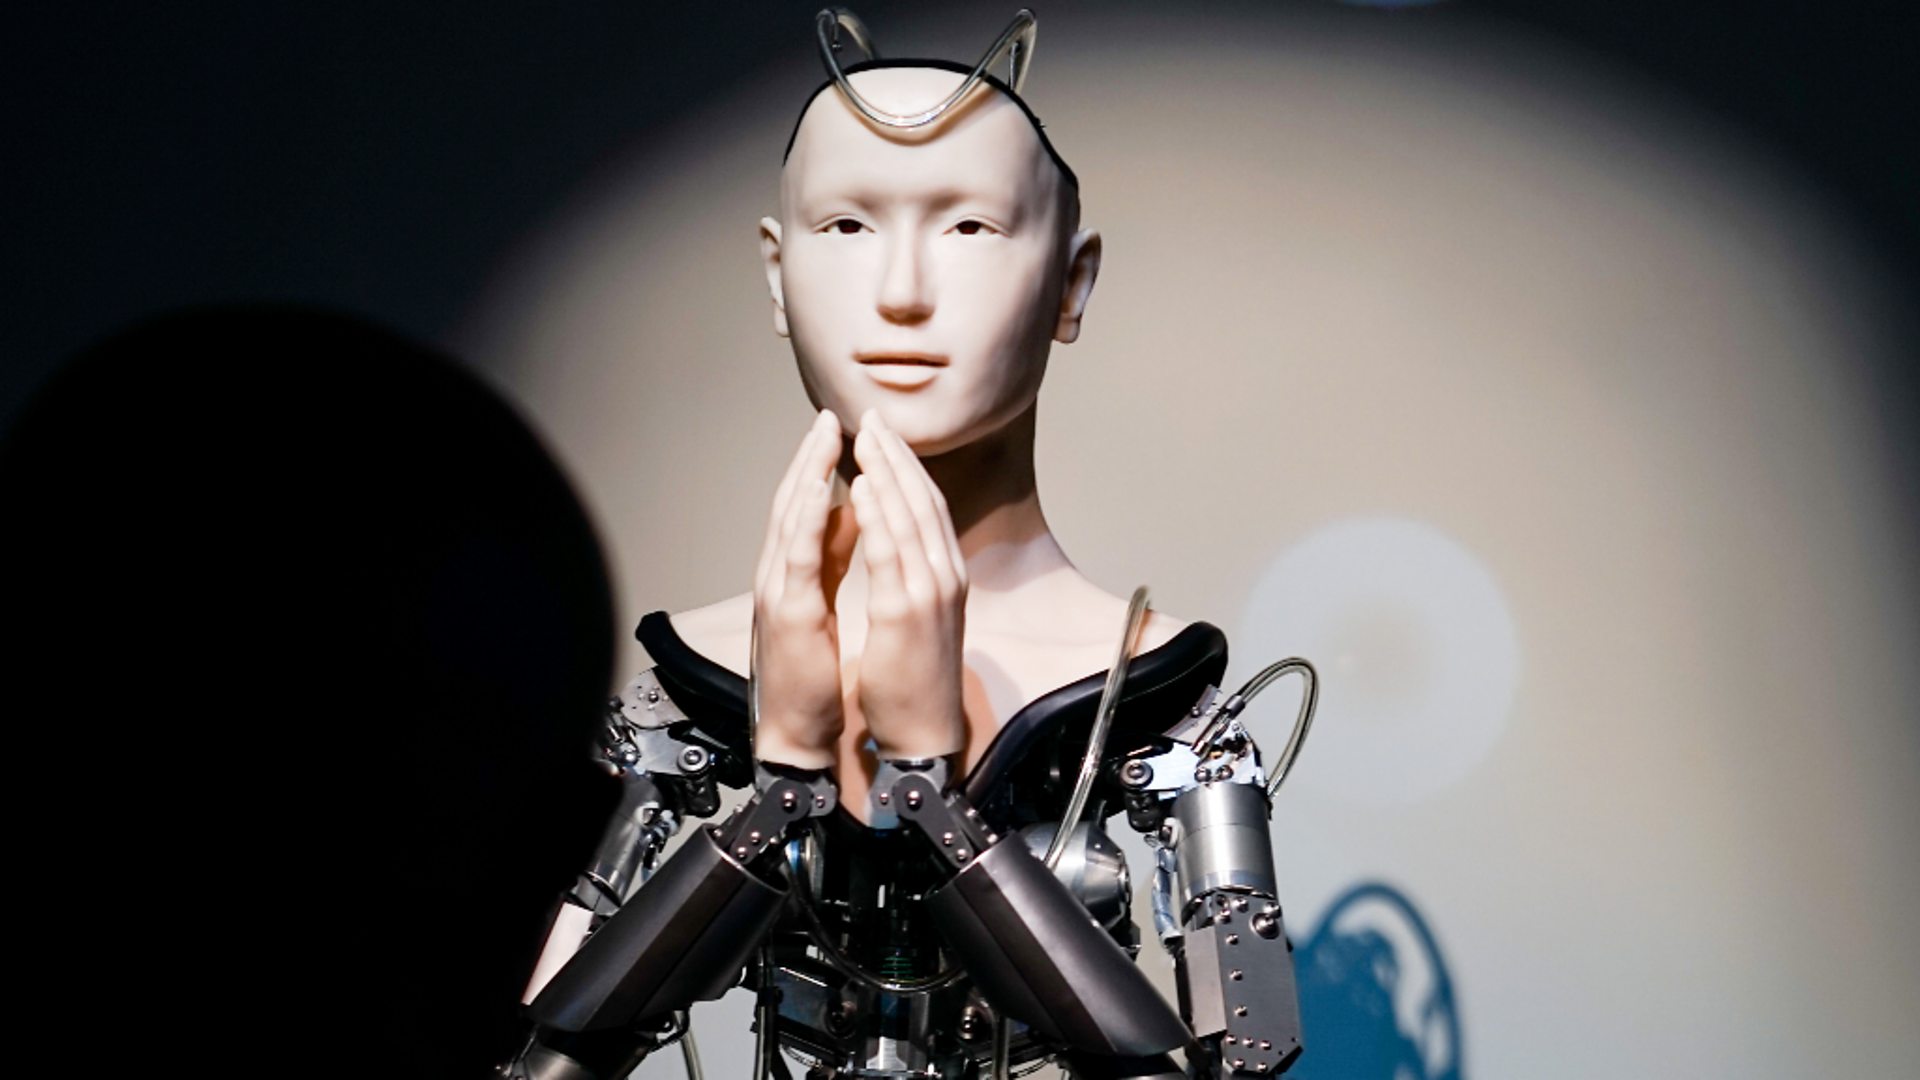 robots: AI transform religion? - BBC News